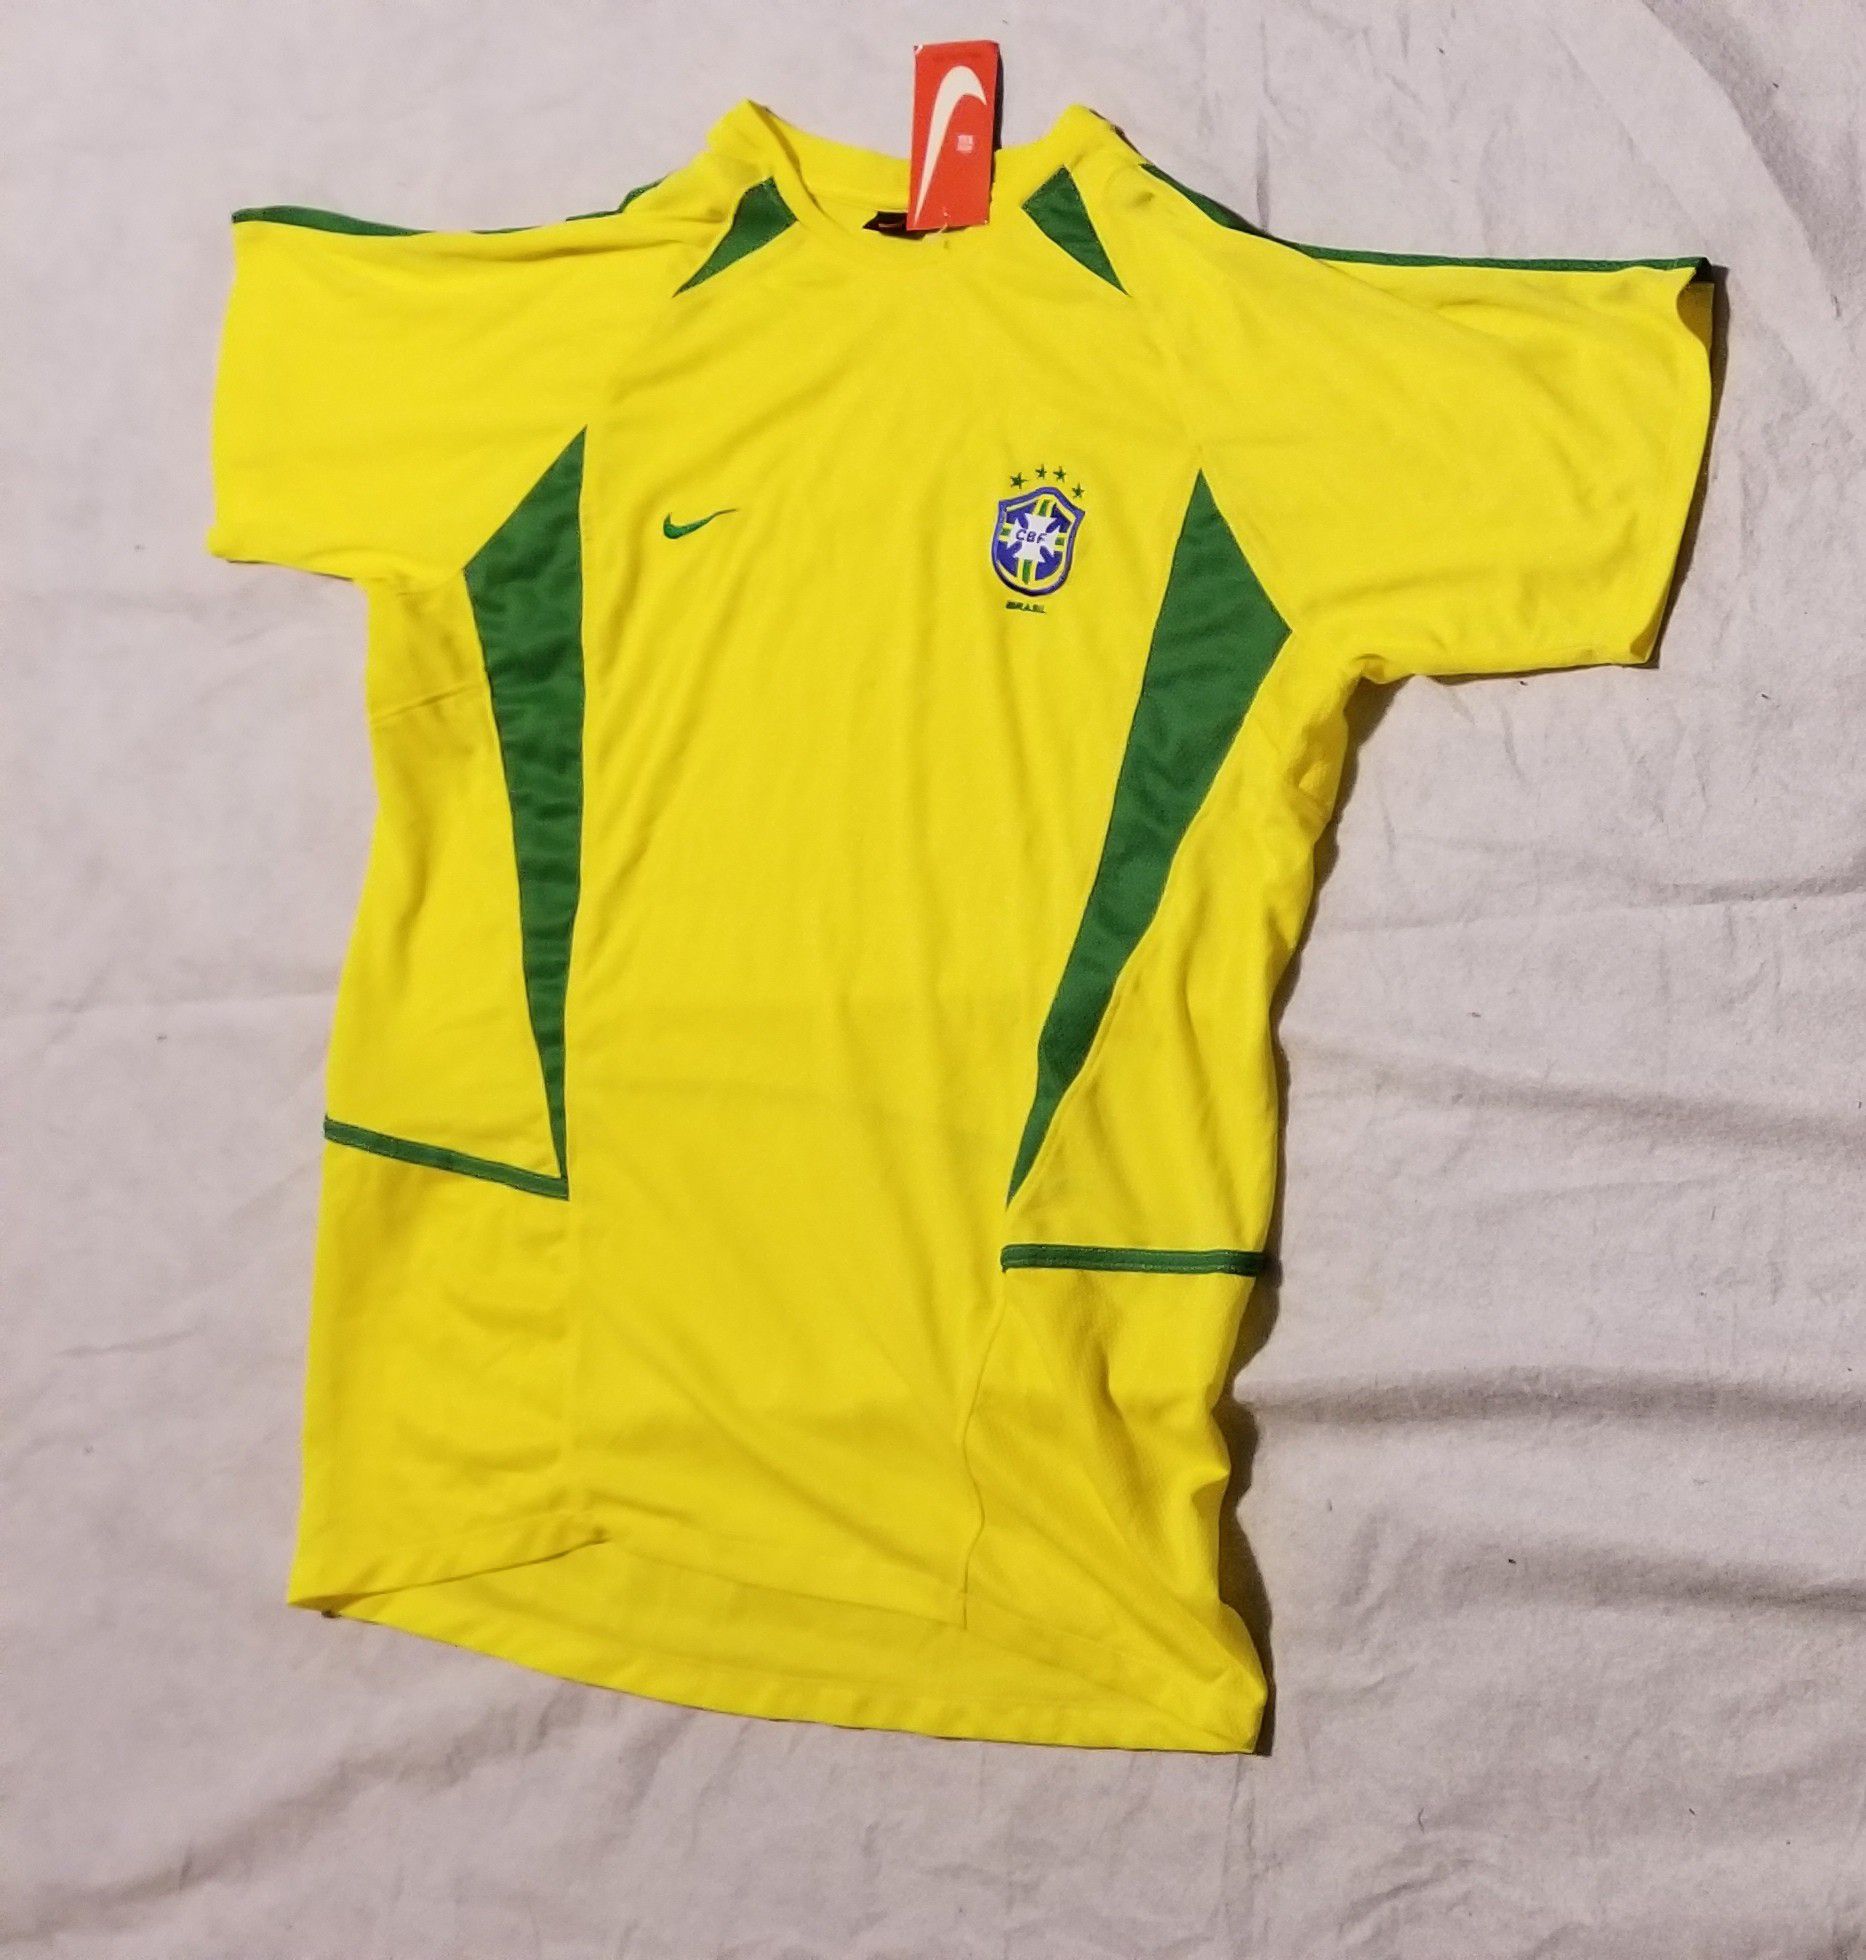 Nike Brazil home jersey